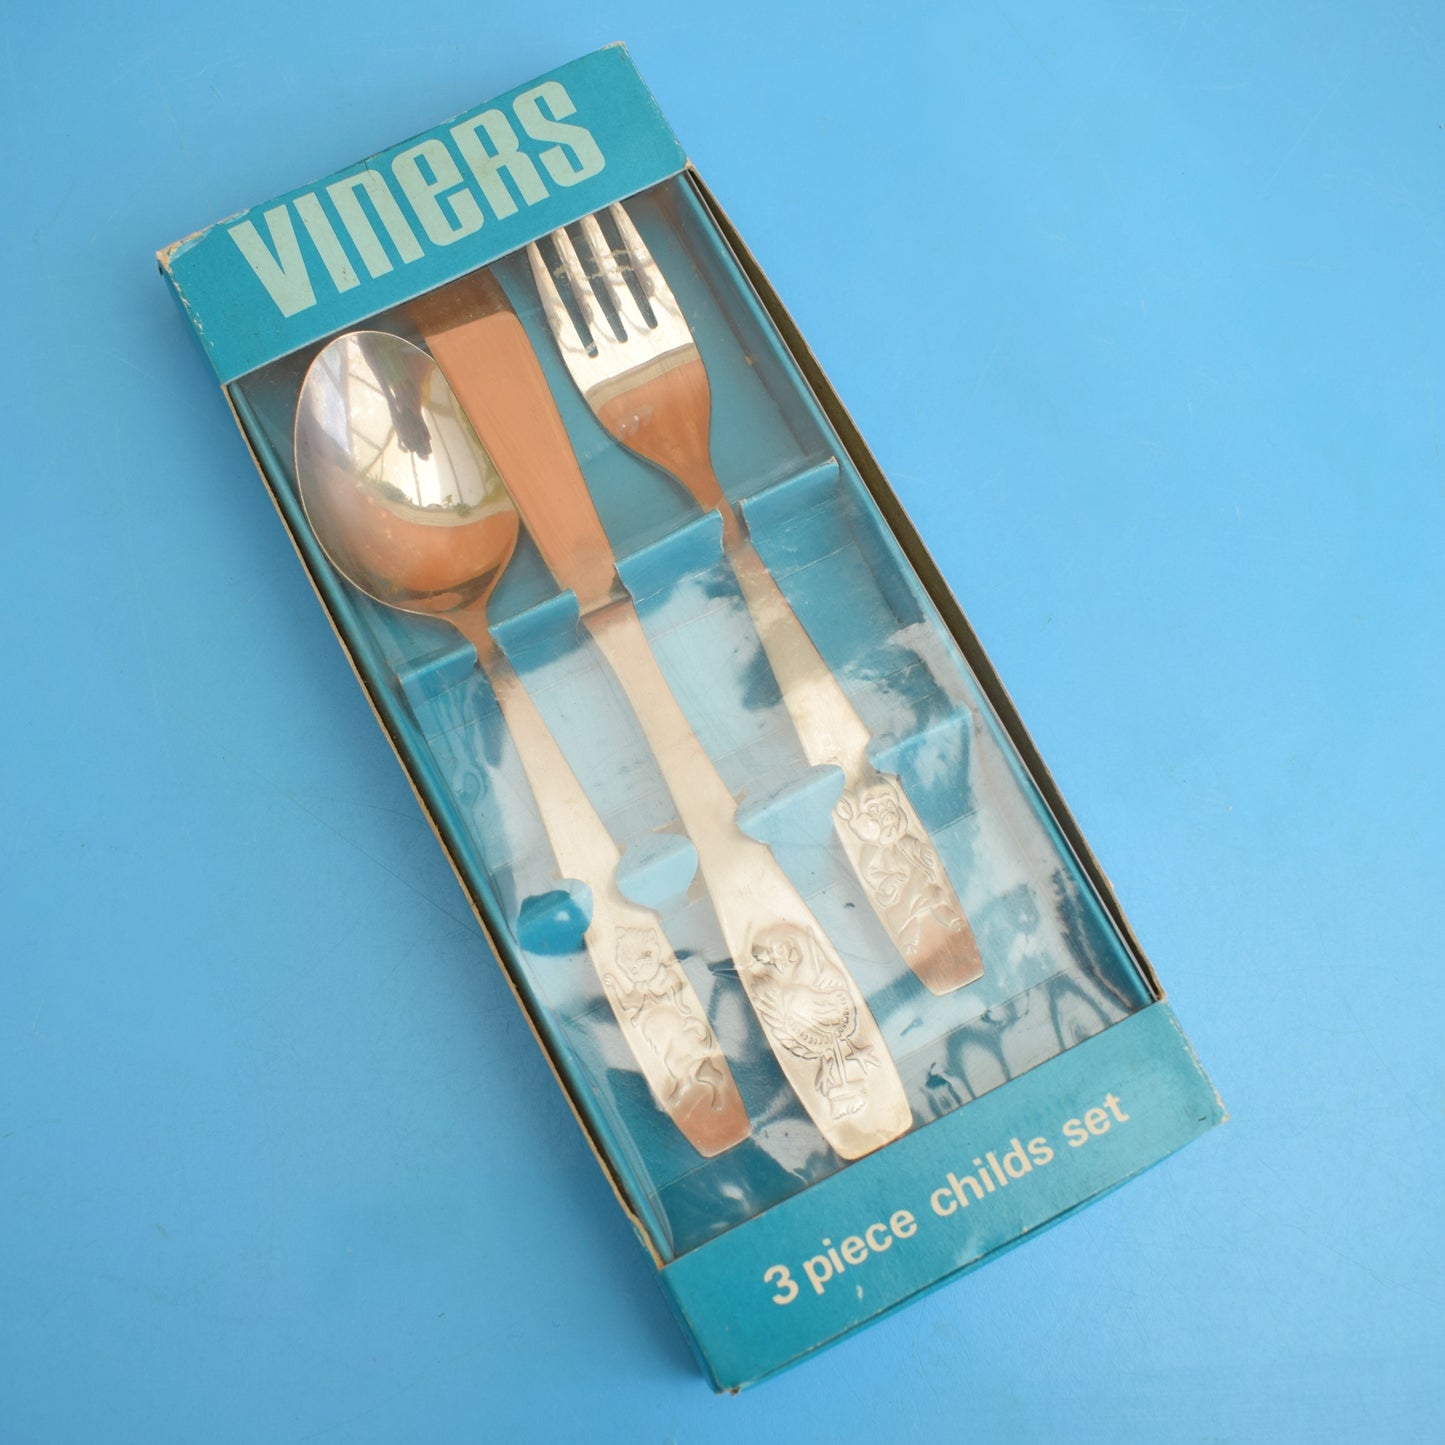 Vintage 1970s Boxed Kids Cutlery Set - Viners